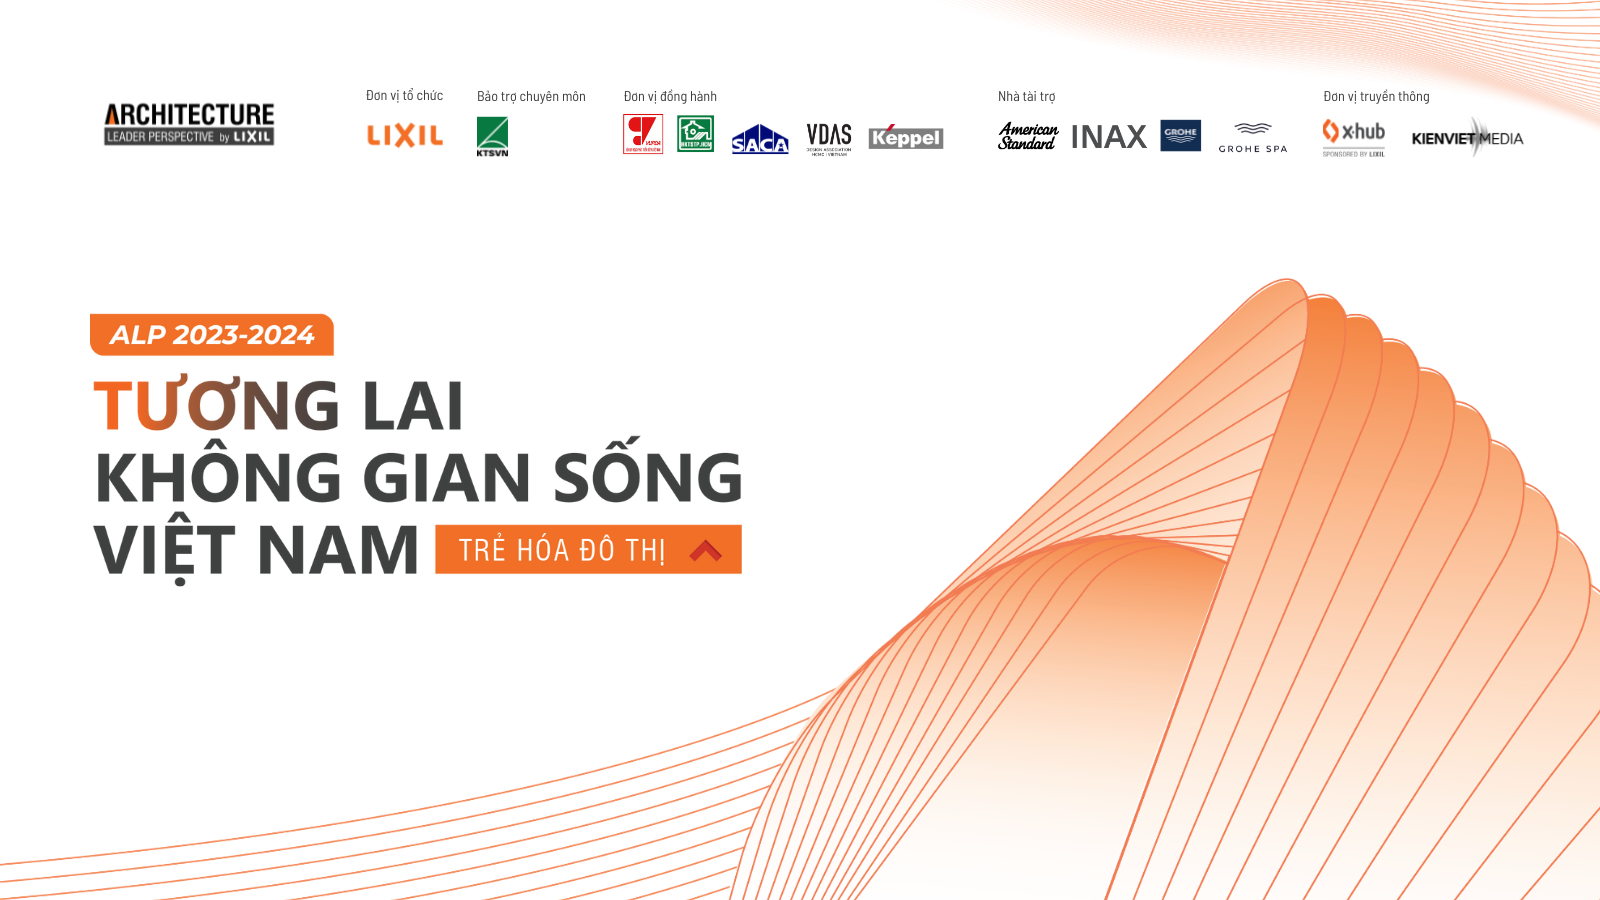 LIXIL Việt Nam công bố Chương trình ALP 2023 - 2024: “Tương lai không gian sống Việt Nam” với chủ đề Trẻ hóa đô thị 